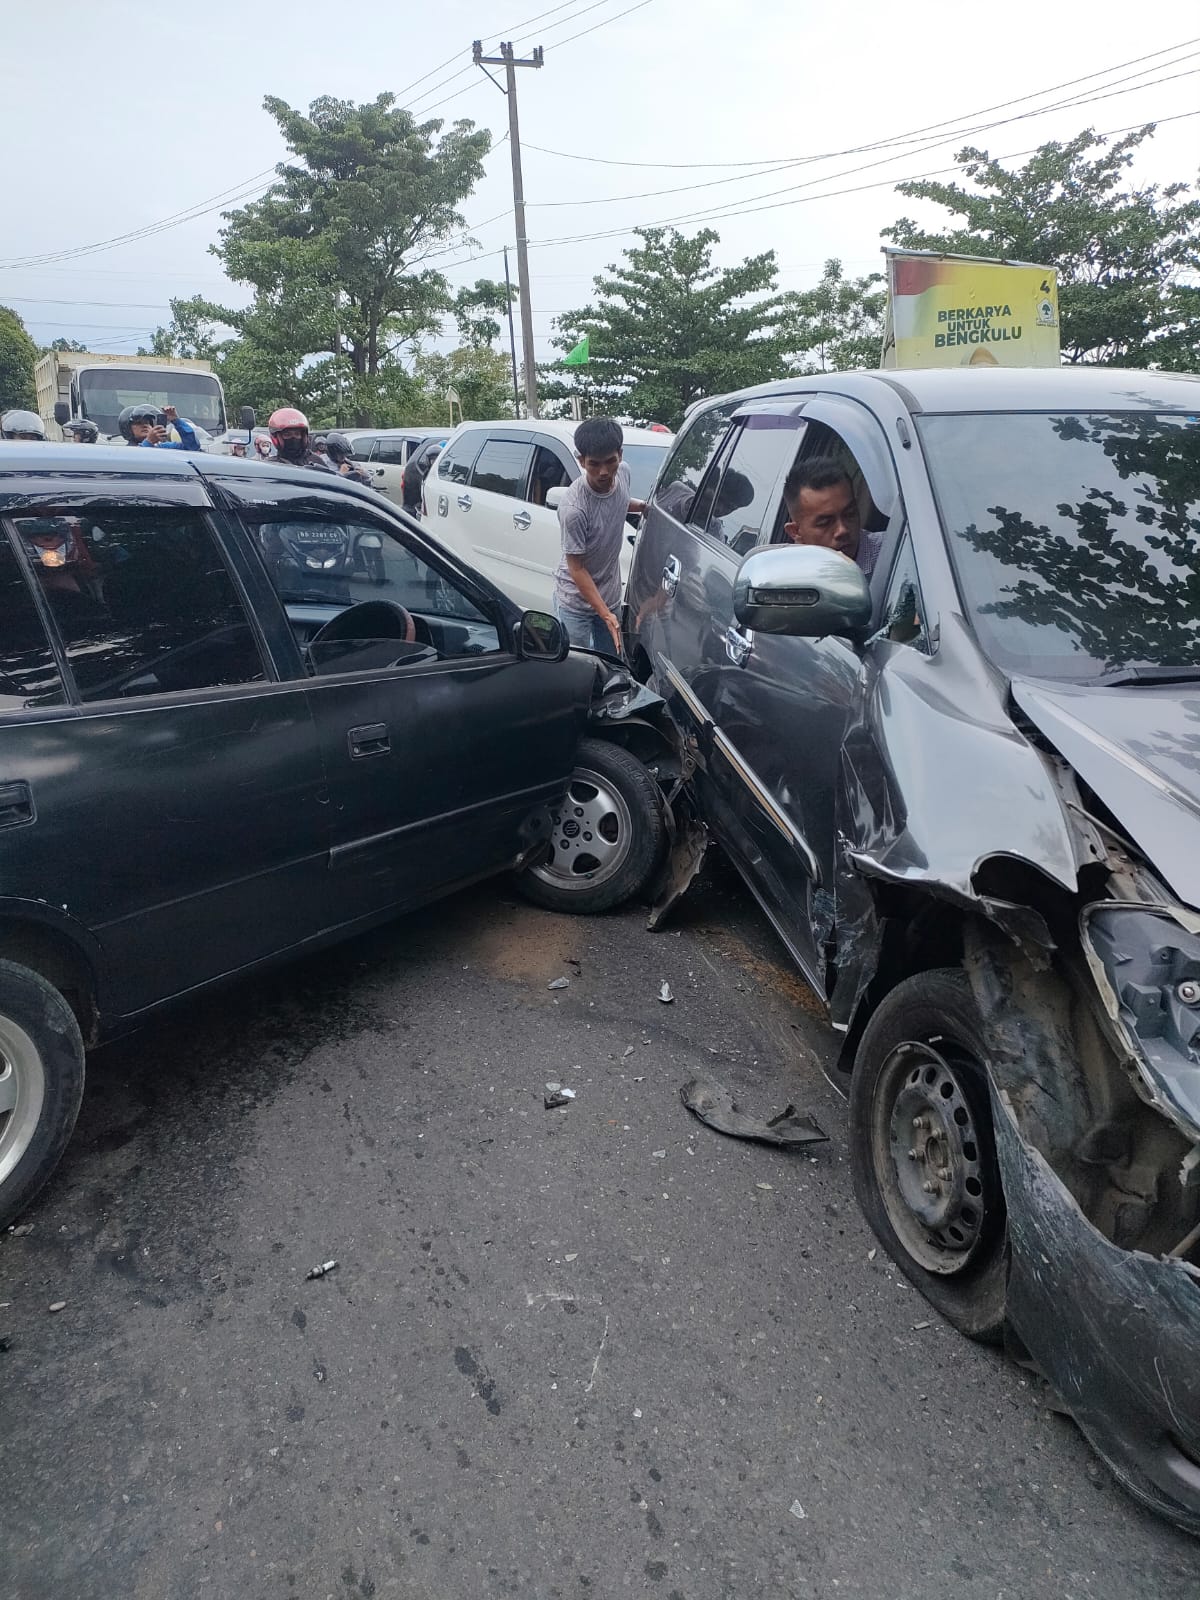 BREAKING NEWS : Kecelakaan Beruntun di Jalan Lintas Bengkulu Tengah Libatkan 3 Mobil, Begini Kondisinya